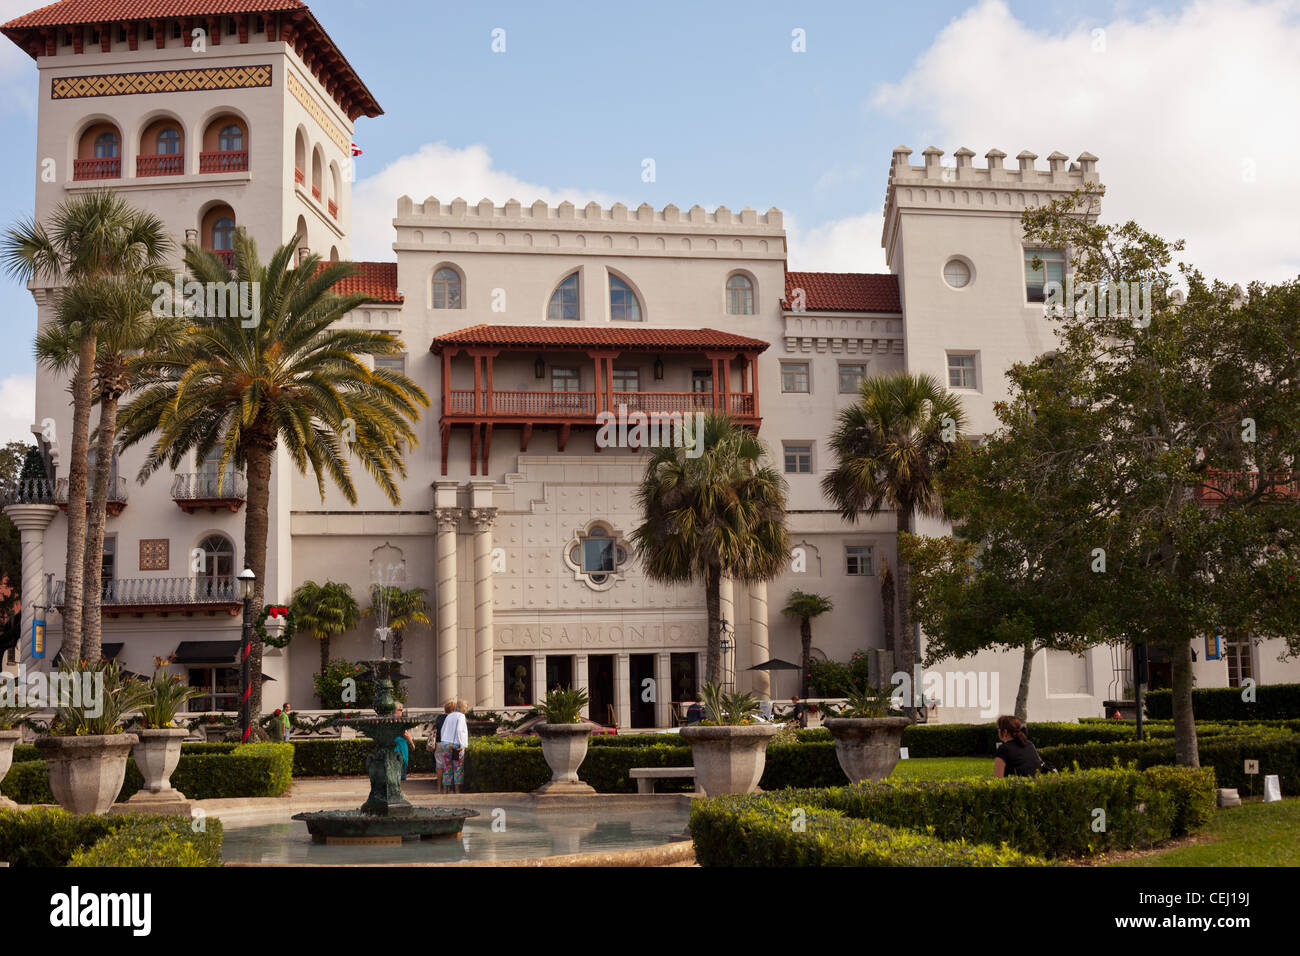 Casa Monica Hotel, St Augustine, Floride, USA. Hôtel de style espagnol dans le centre de la ville Banque D'Images